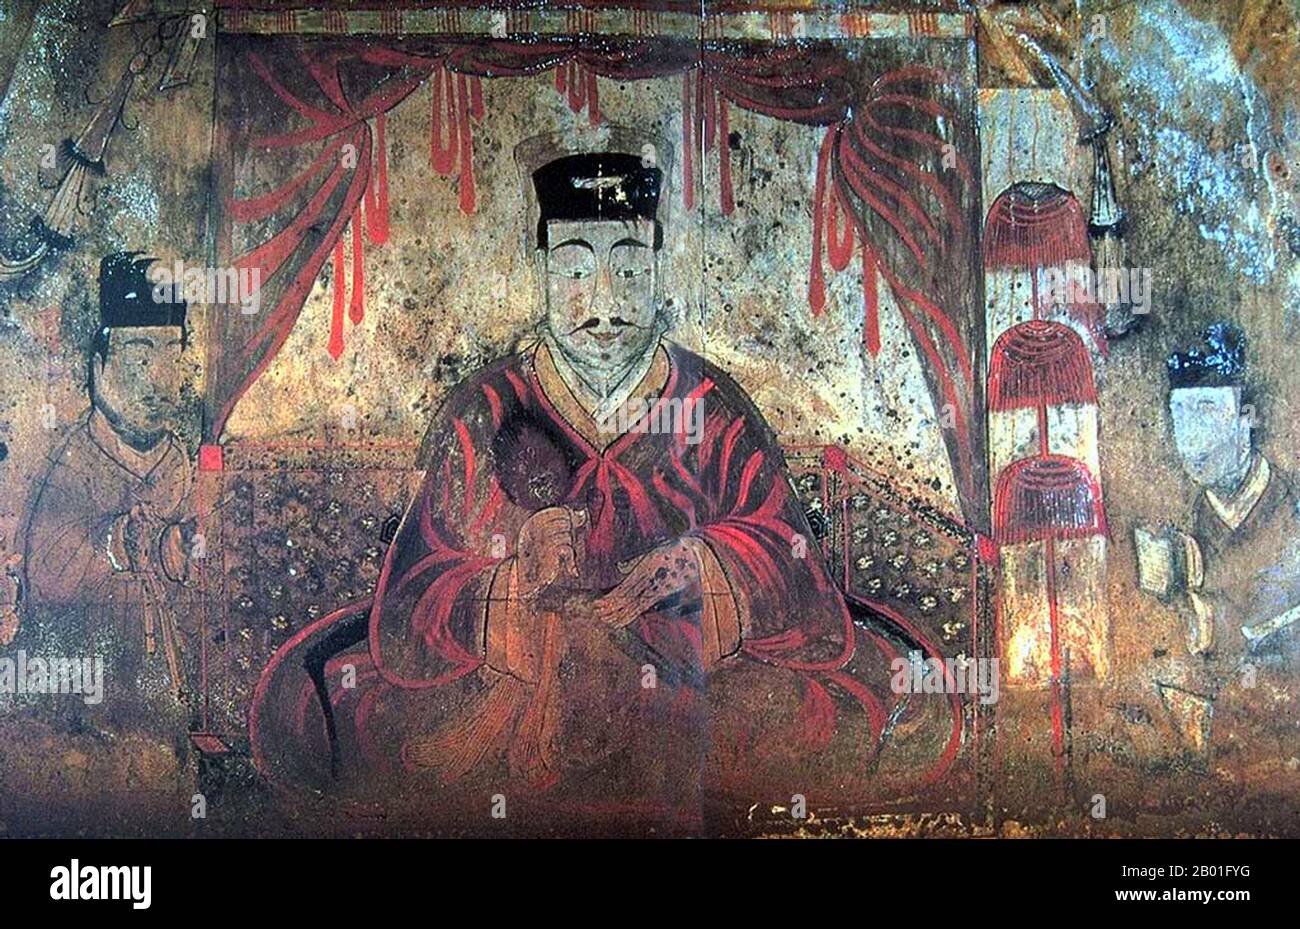 Korea: Grabportrait von König Micheon oder König Gogugwon oder Minister Dong Shou, Koguryo, Anak Tomb 3, c. 371 CE. Goguryeo oder Koguryŏ war ein antikes koreanisches Königreich, das sich heute in nördlichen und zentralen Teilen der koreanischen Halbinsel, der Südmandschurei und der südlichen russischen Küstenprovinz befindet. Zusammen mit Baekje und Silla war Goguryeo eines der drei Königreiche Koreas. Goguryeo war ein aktiver Teilnehmer am Machtkampf um die Kontrolle über die koreanische Halbinsel sowie mit den Außenbeziehungen der Nachbarpolitiken in China und Japan verbunden. Stockfoto